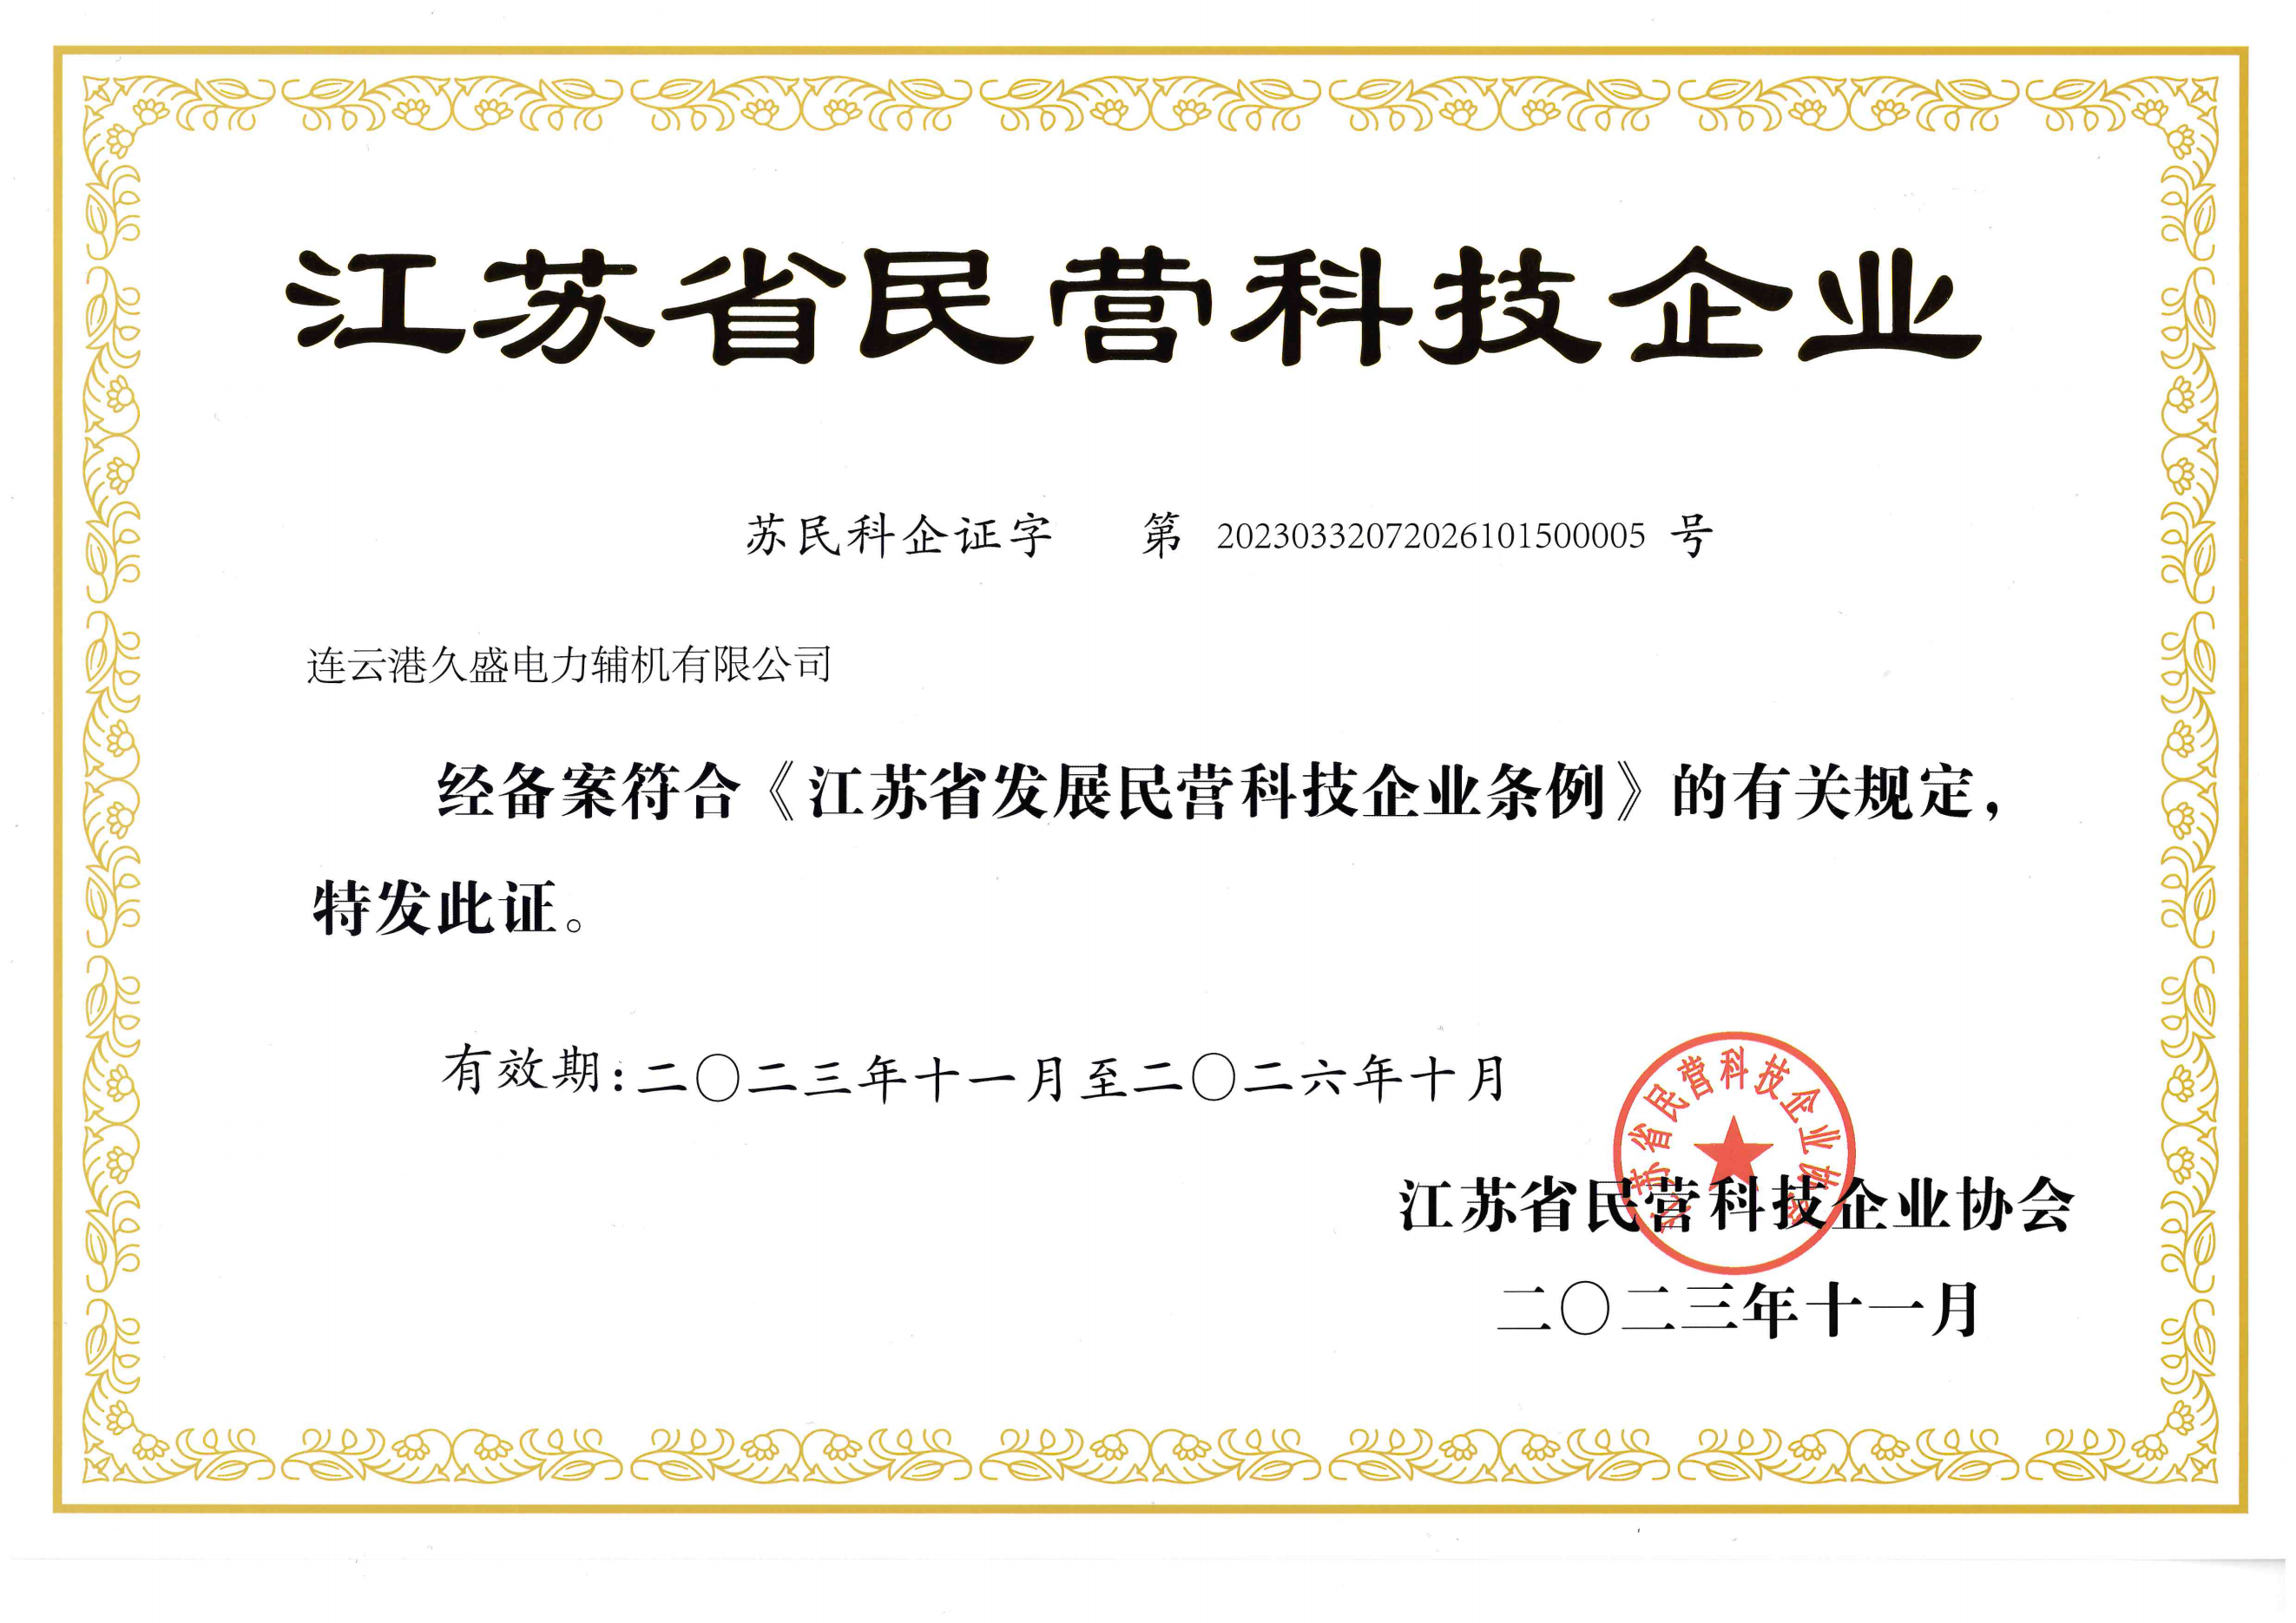 我公司获江苏省民营科技企业殊荣